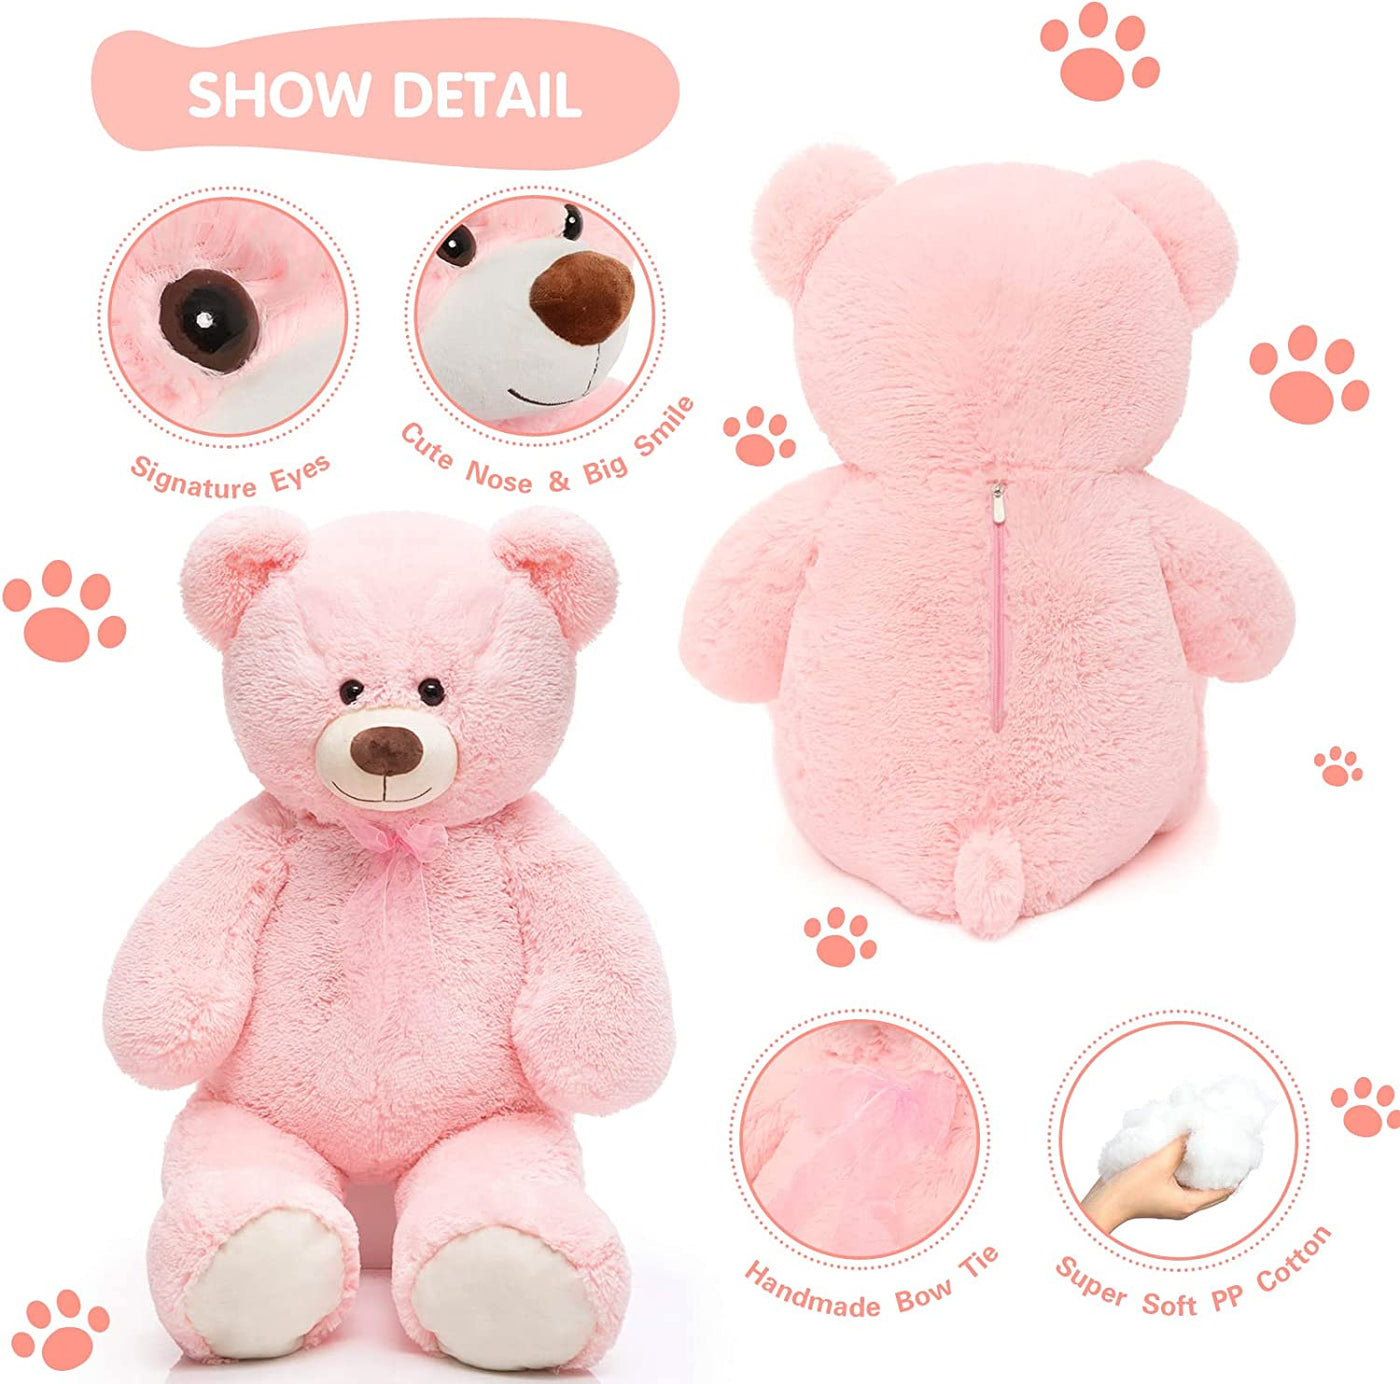 Giant Teddy Bear Plush Toy, Pink, 35.4/51 Inches - MorisMos Plush Toys